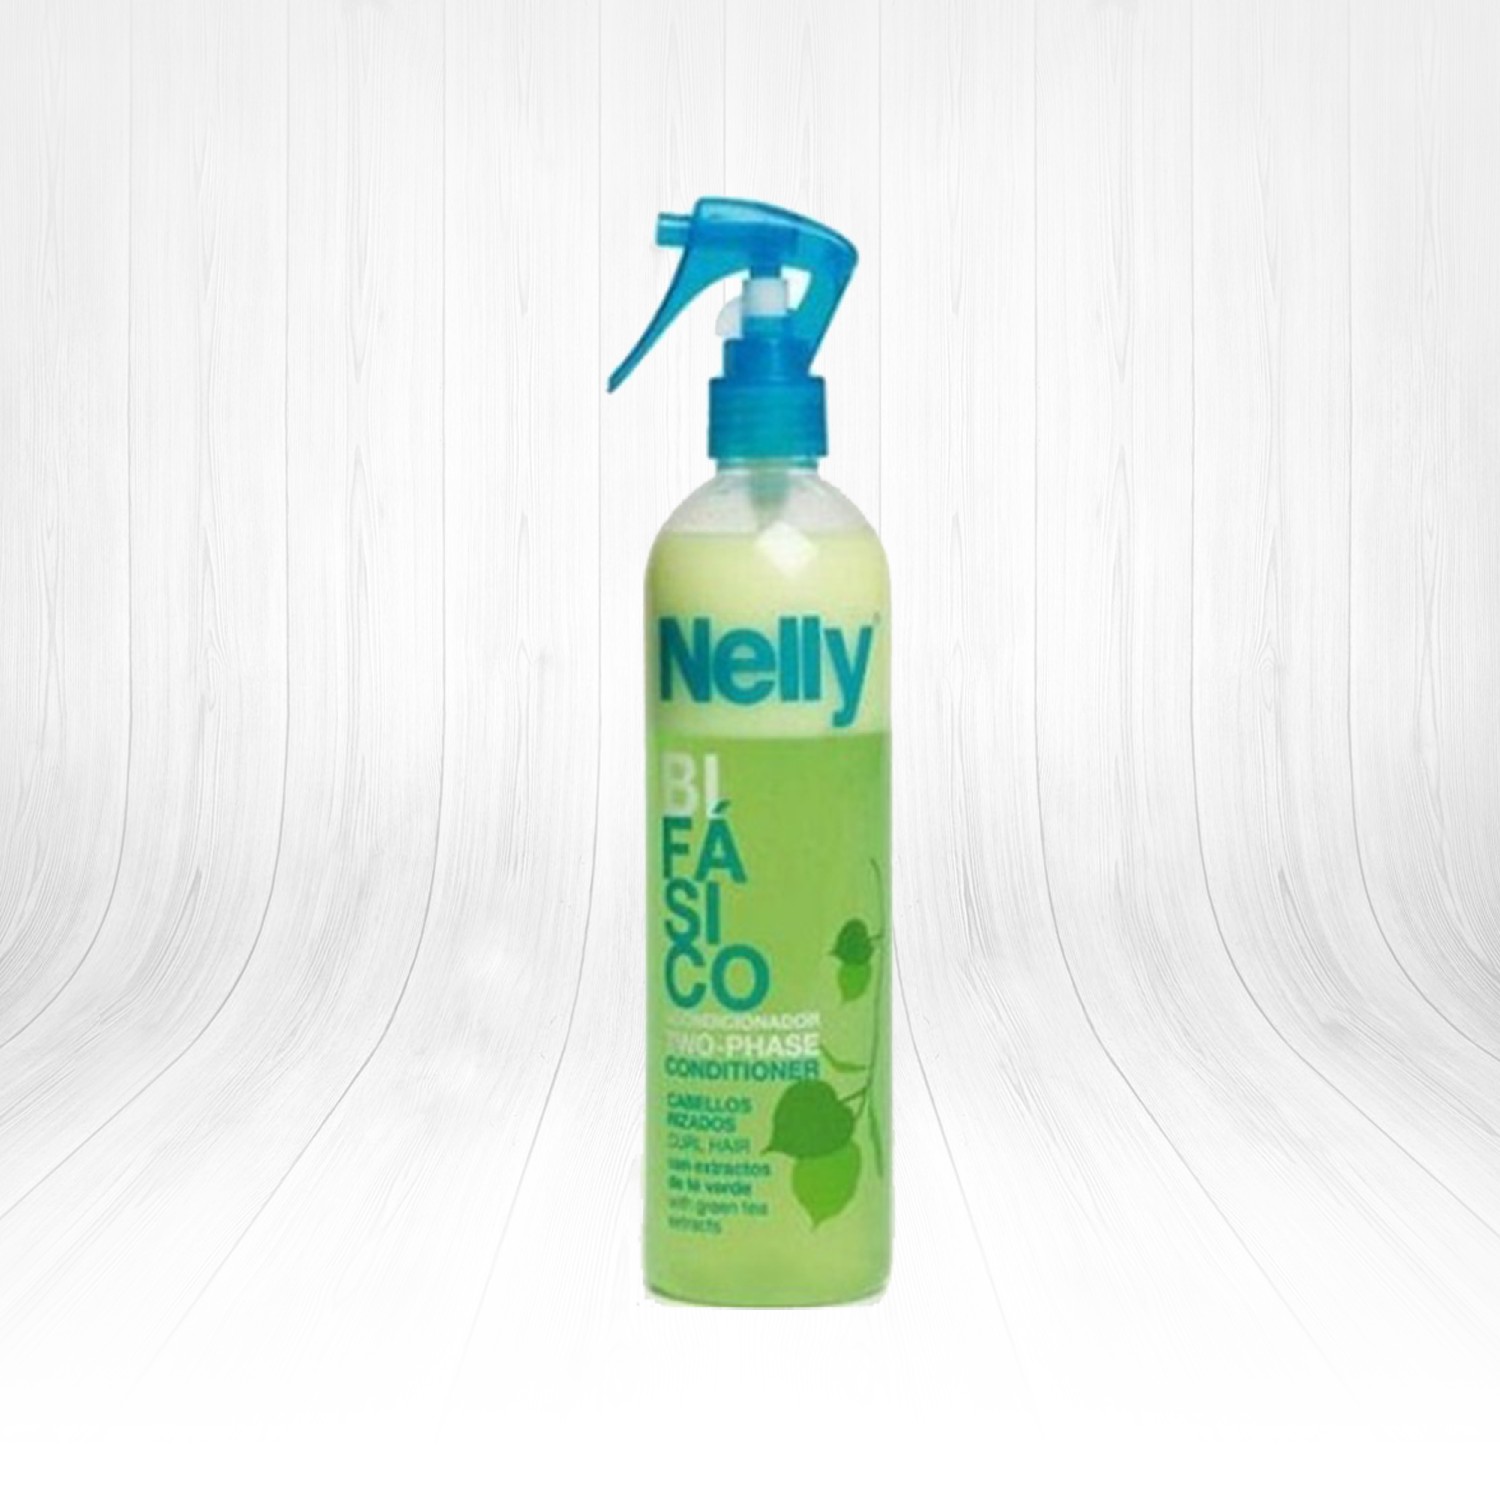 Nelly Two Phase Conditioner Curl Hair Kıvırcık Saçlar İçin Dolaşık Açıcı Sprey